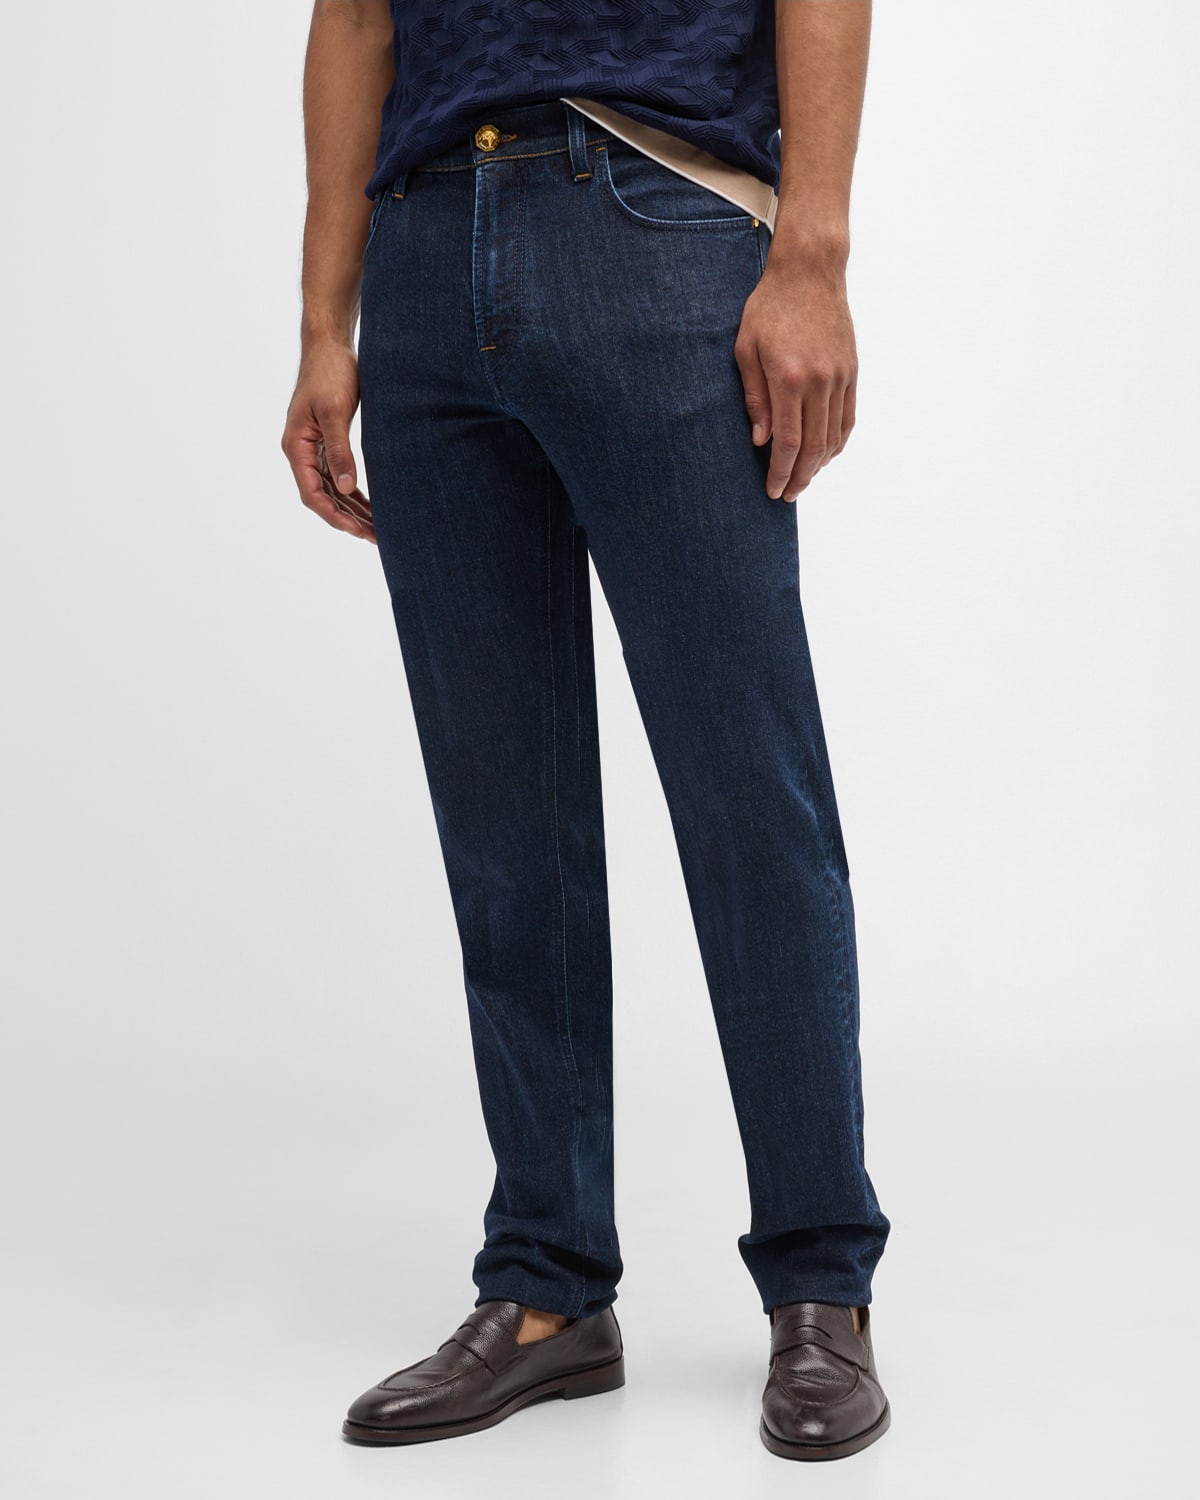 Men's Straight-Leg Dark Wash Denim Jeans